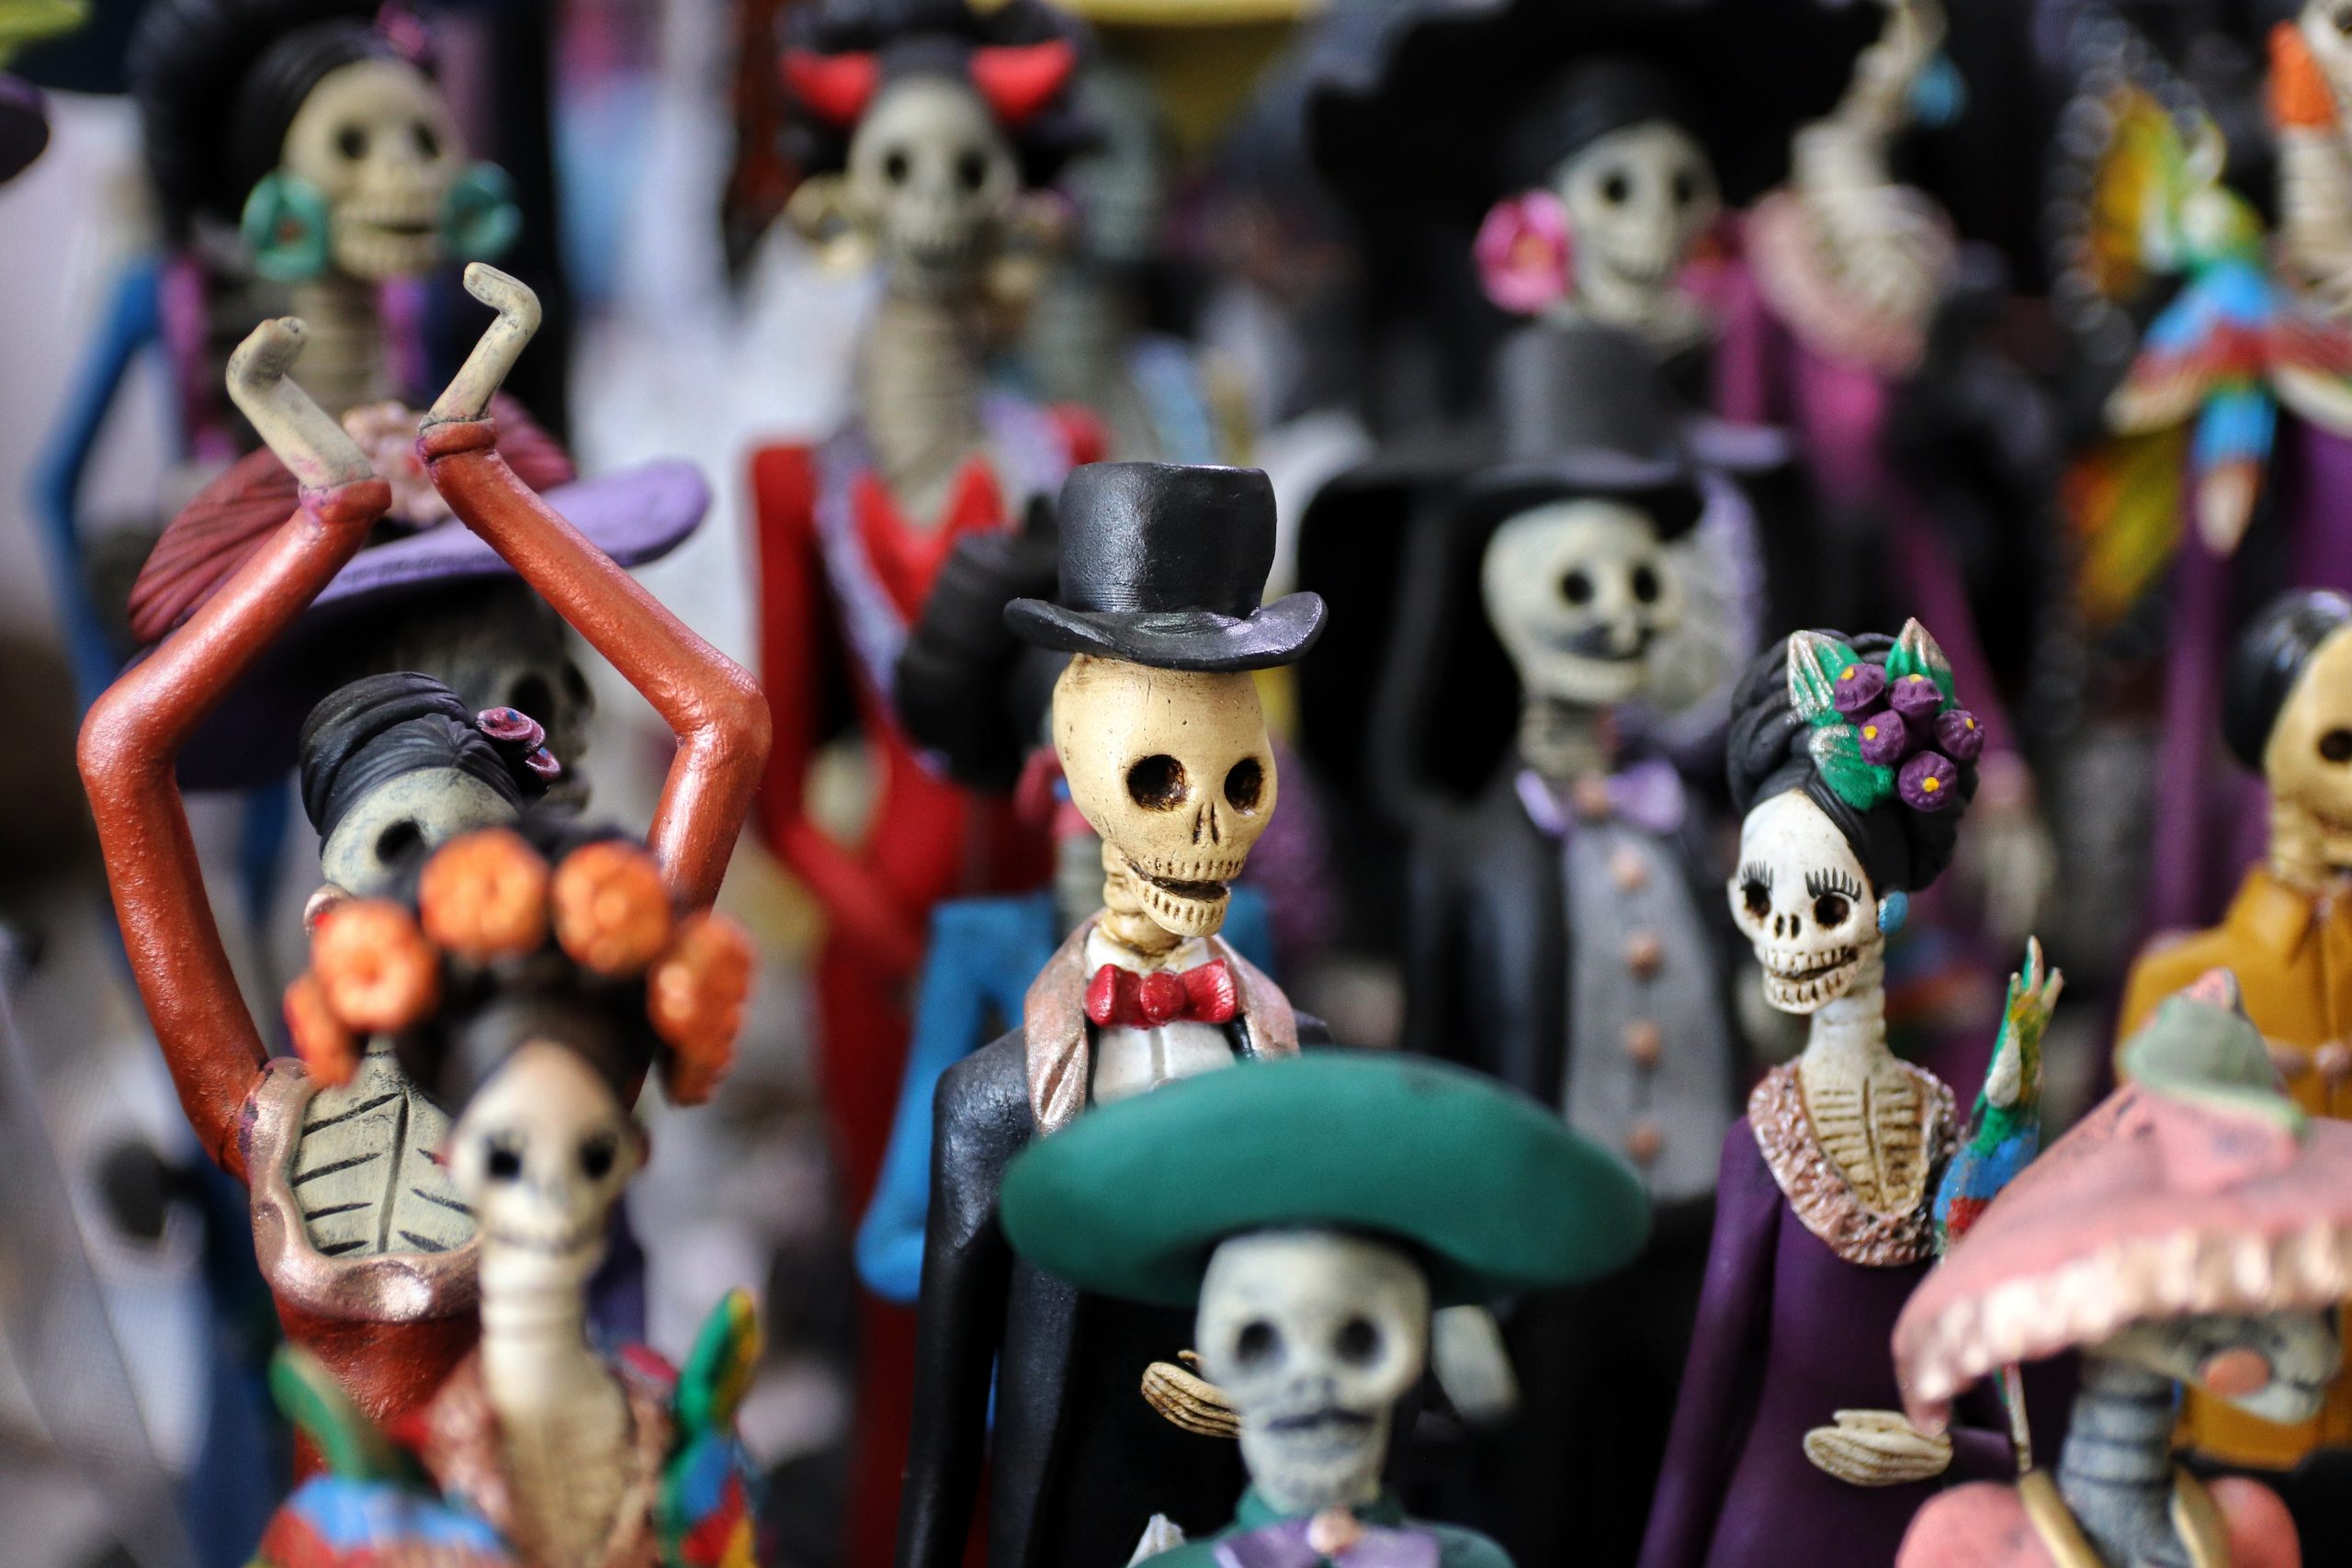 skeleton figurines